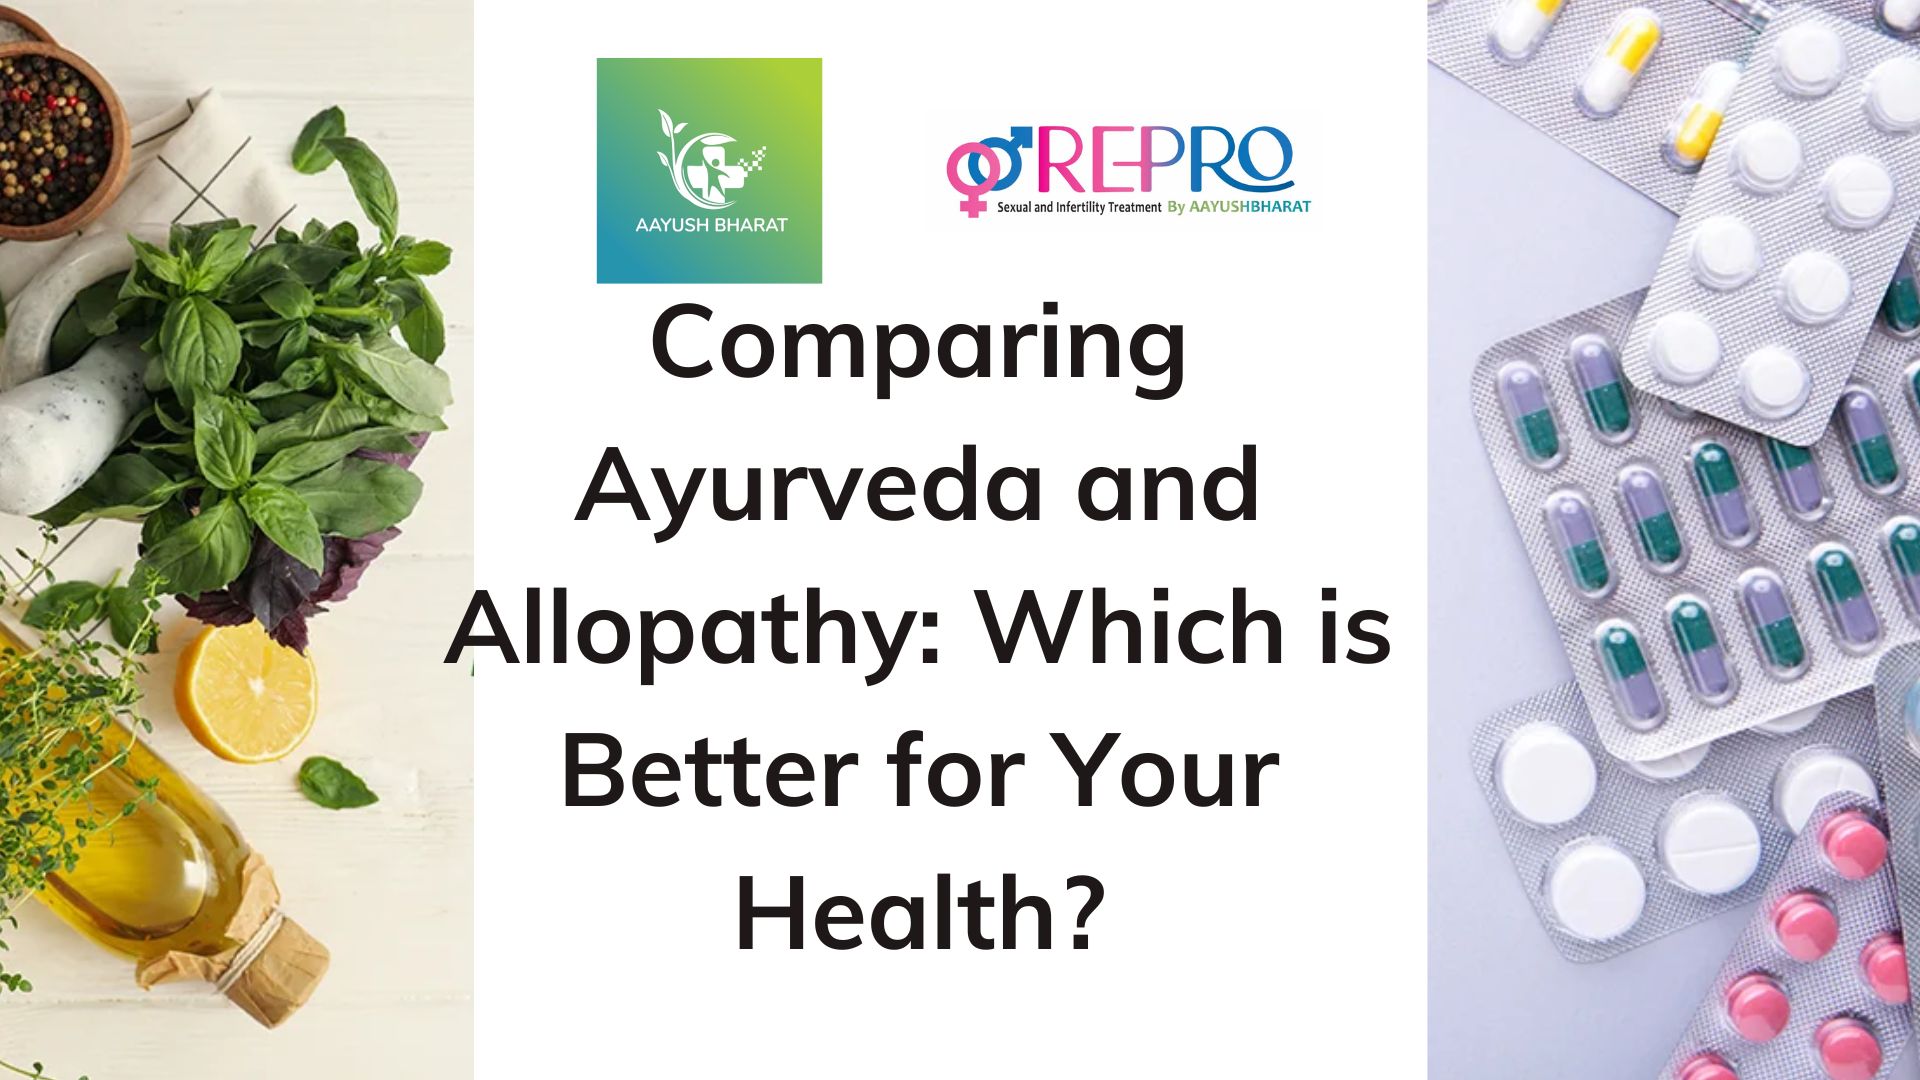 Ayurveda and Allopathy